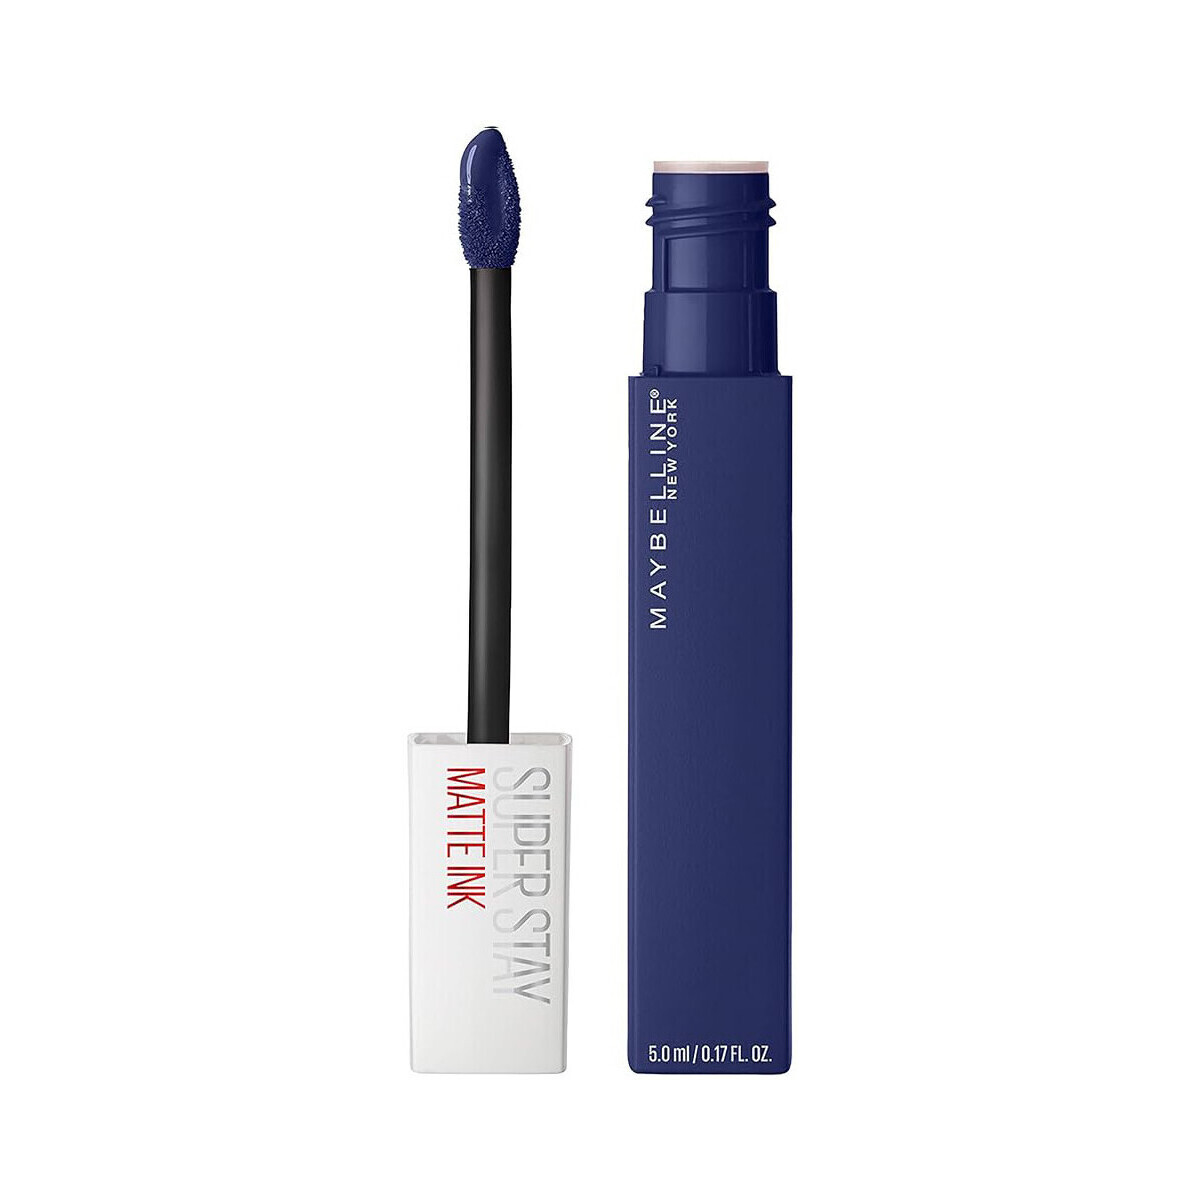 Beauty Damen Lippenstift Maybelline New York Mattes Flüssiglippenstift Superstay Matte Ink Blau